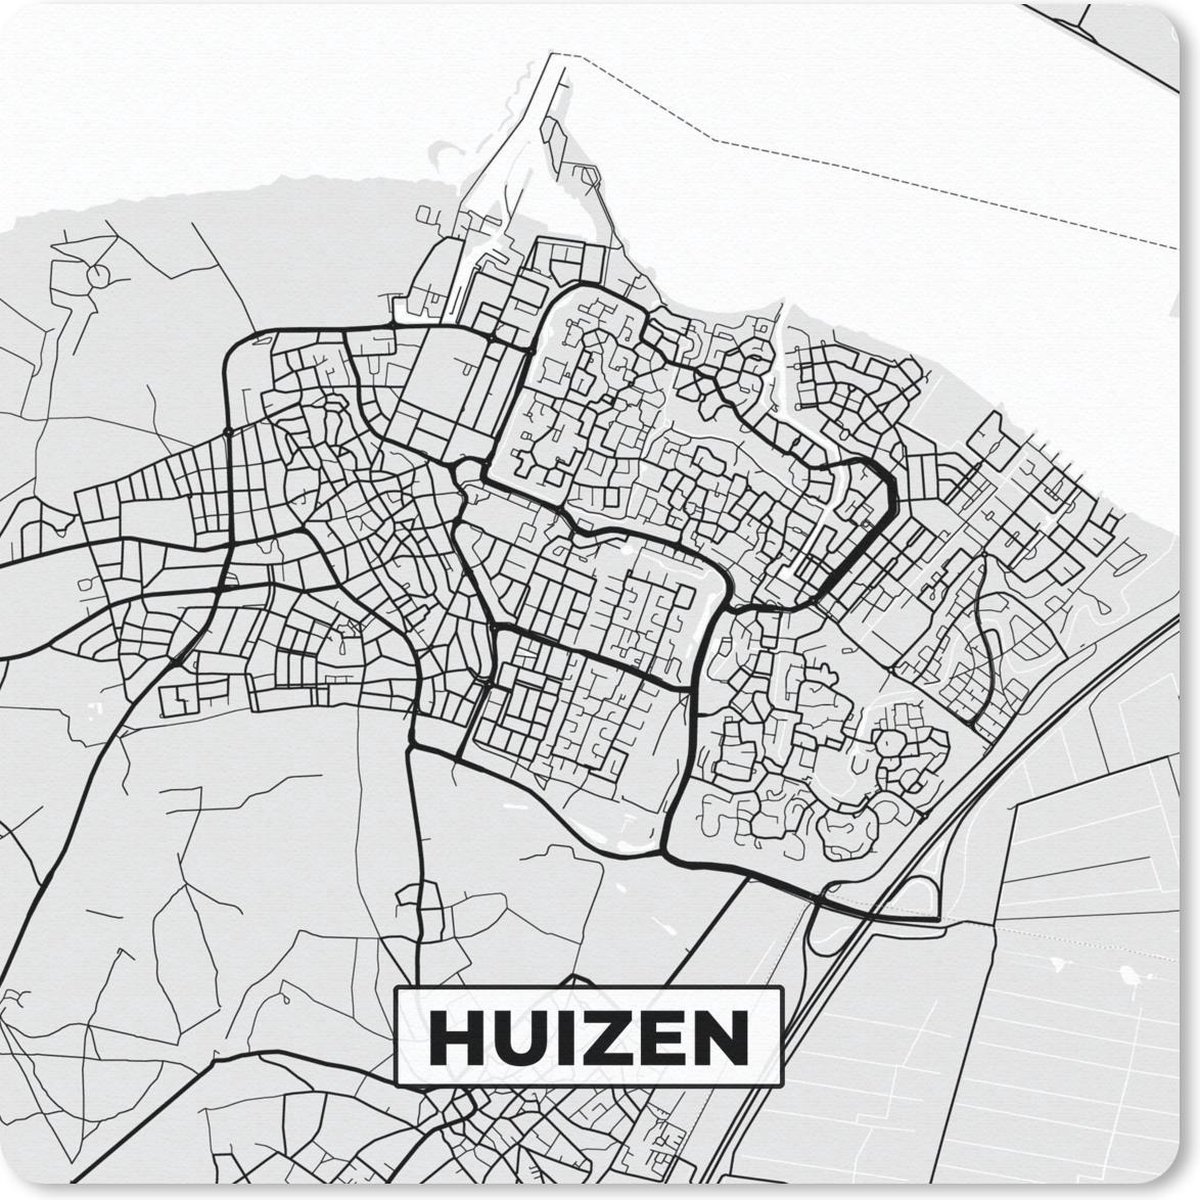 Muismat - Mousepad - Stadskaart - Huizen - Grijs - Wit - 30x30 cm - Muismatten